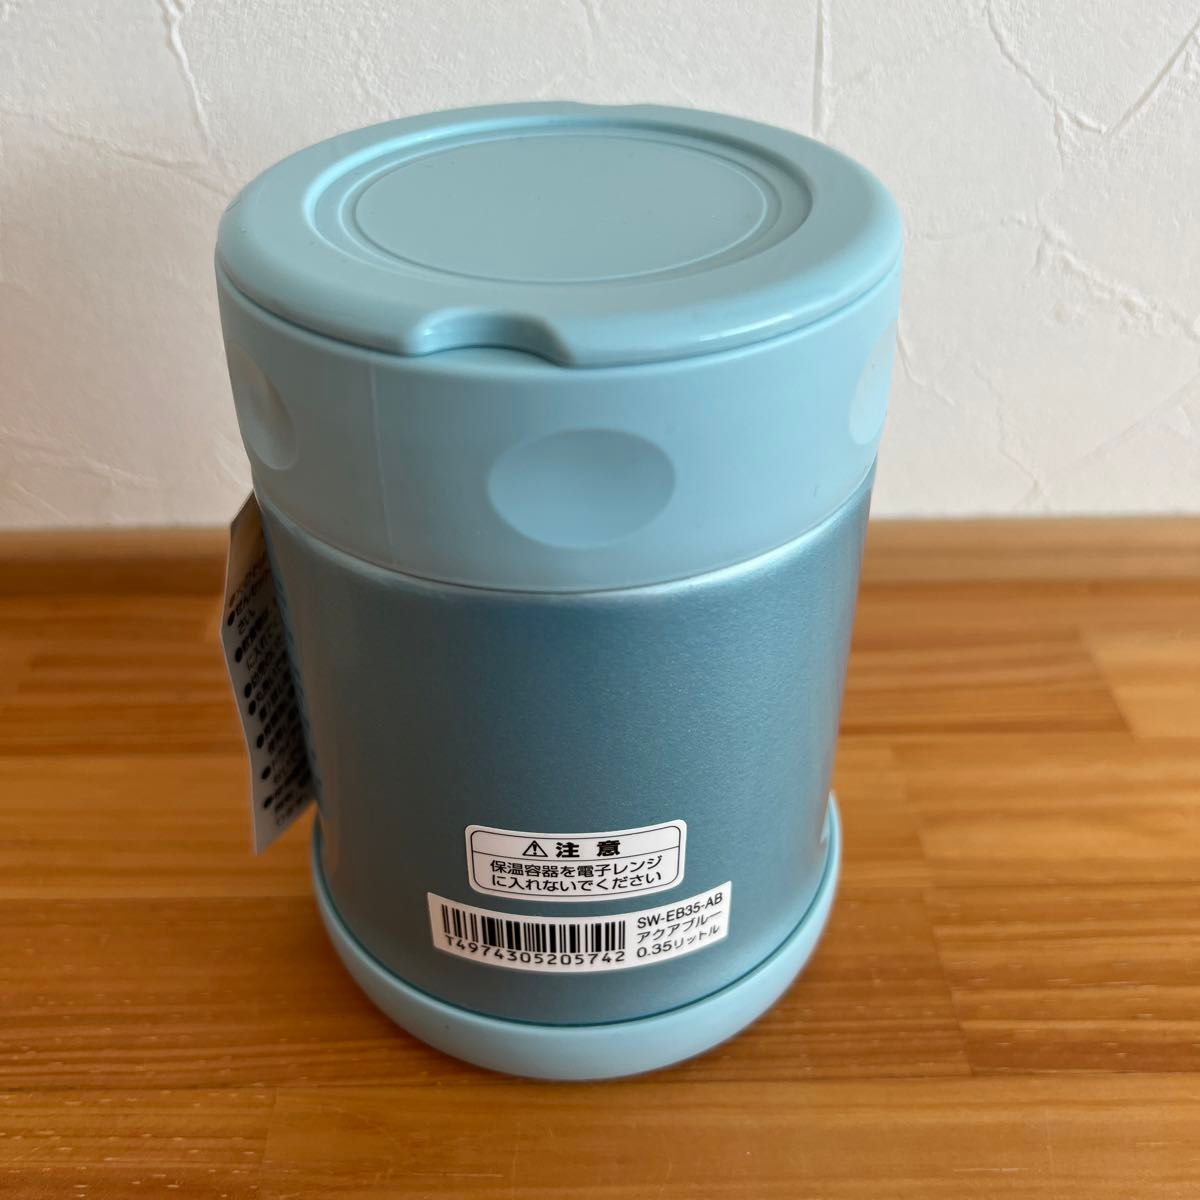 象印ステンレスフードジャー水筒まほうびん水色アクアブルーSW-EB35-ABスープジャーランチジャー新品未使用350ml